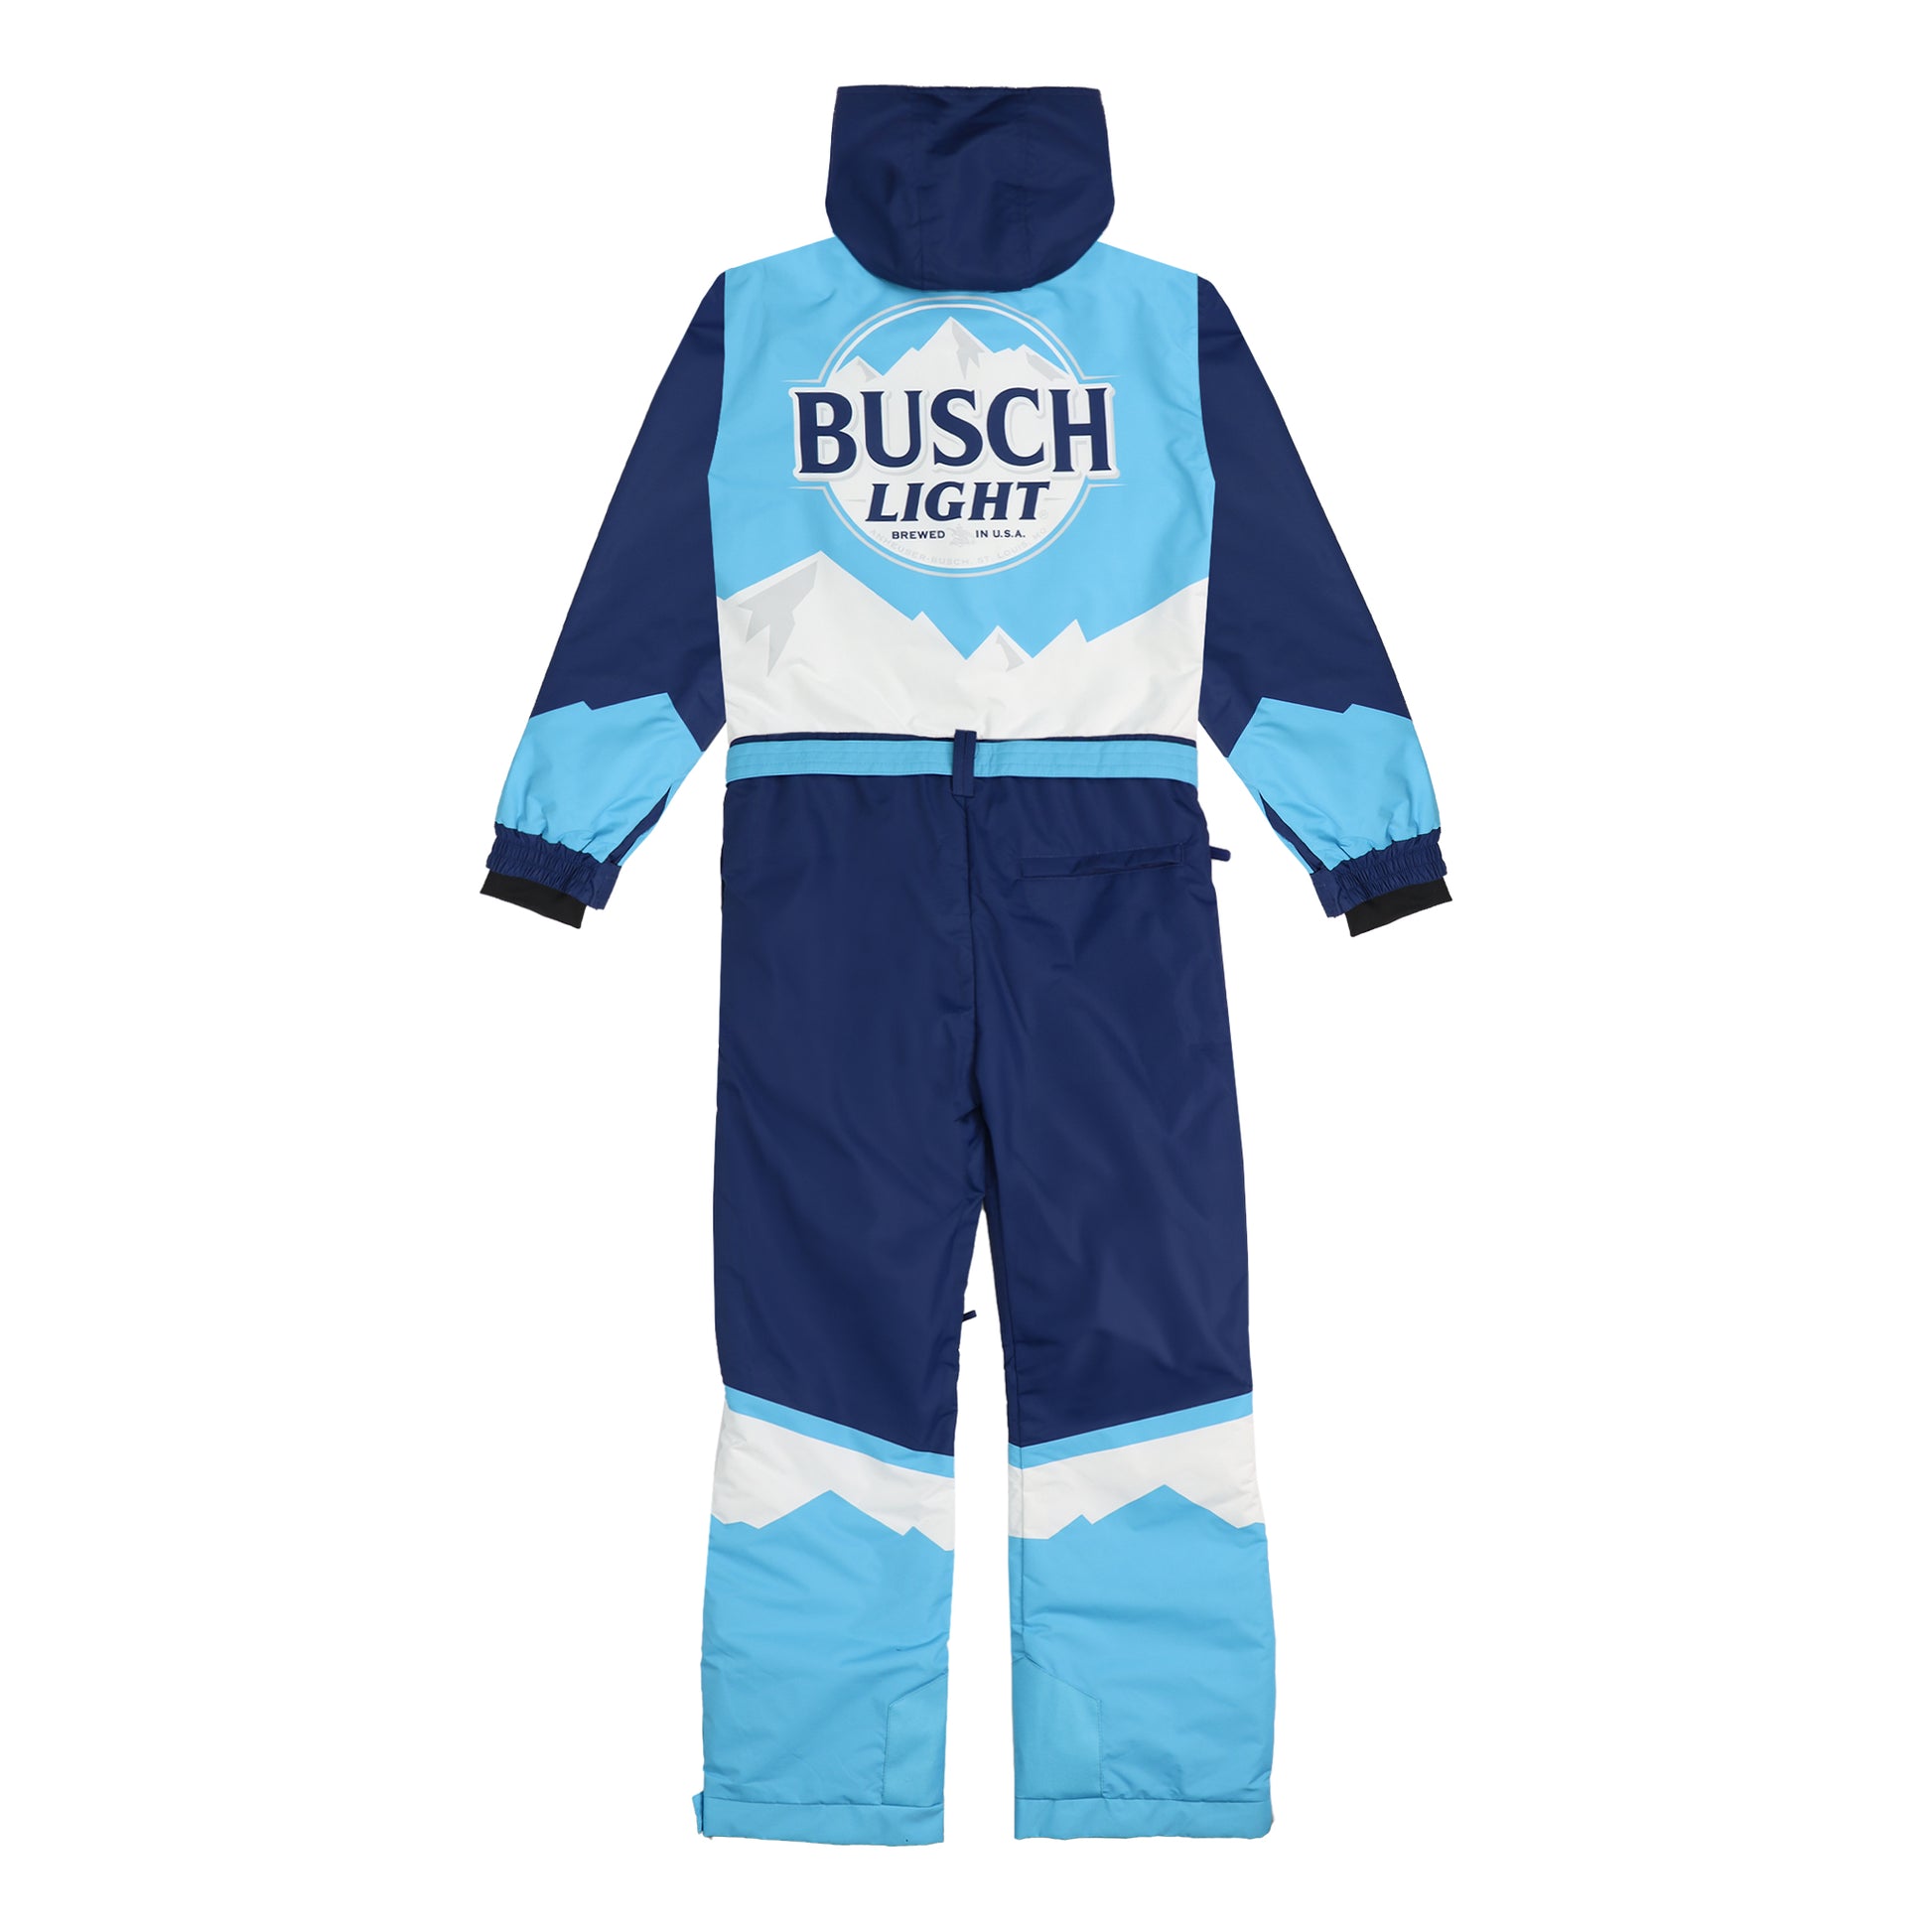 Back view of Busch Light Snow Suit. Busch Light Logo on back center